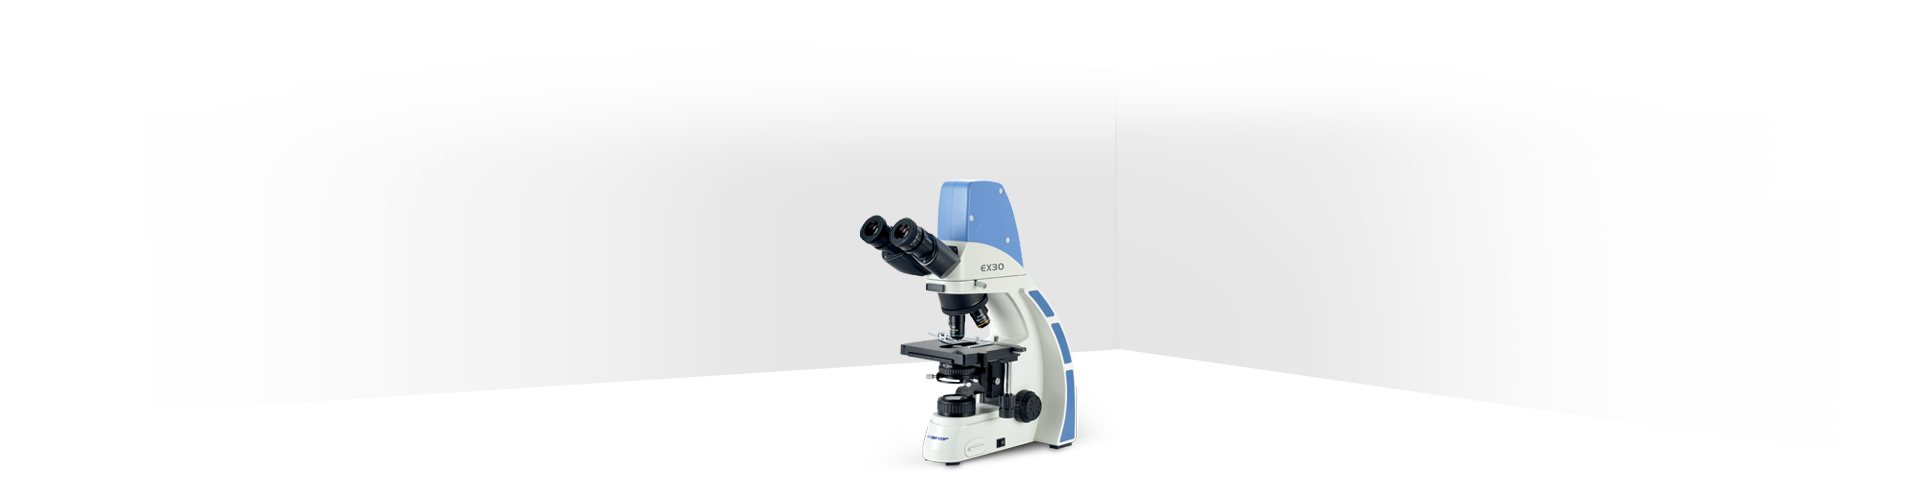 DMEX30系列生物显微镜